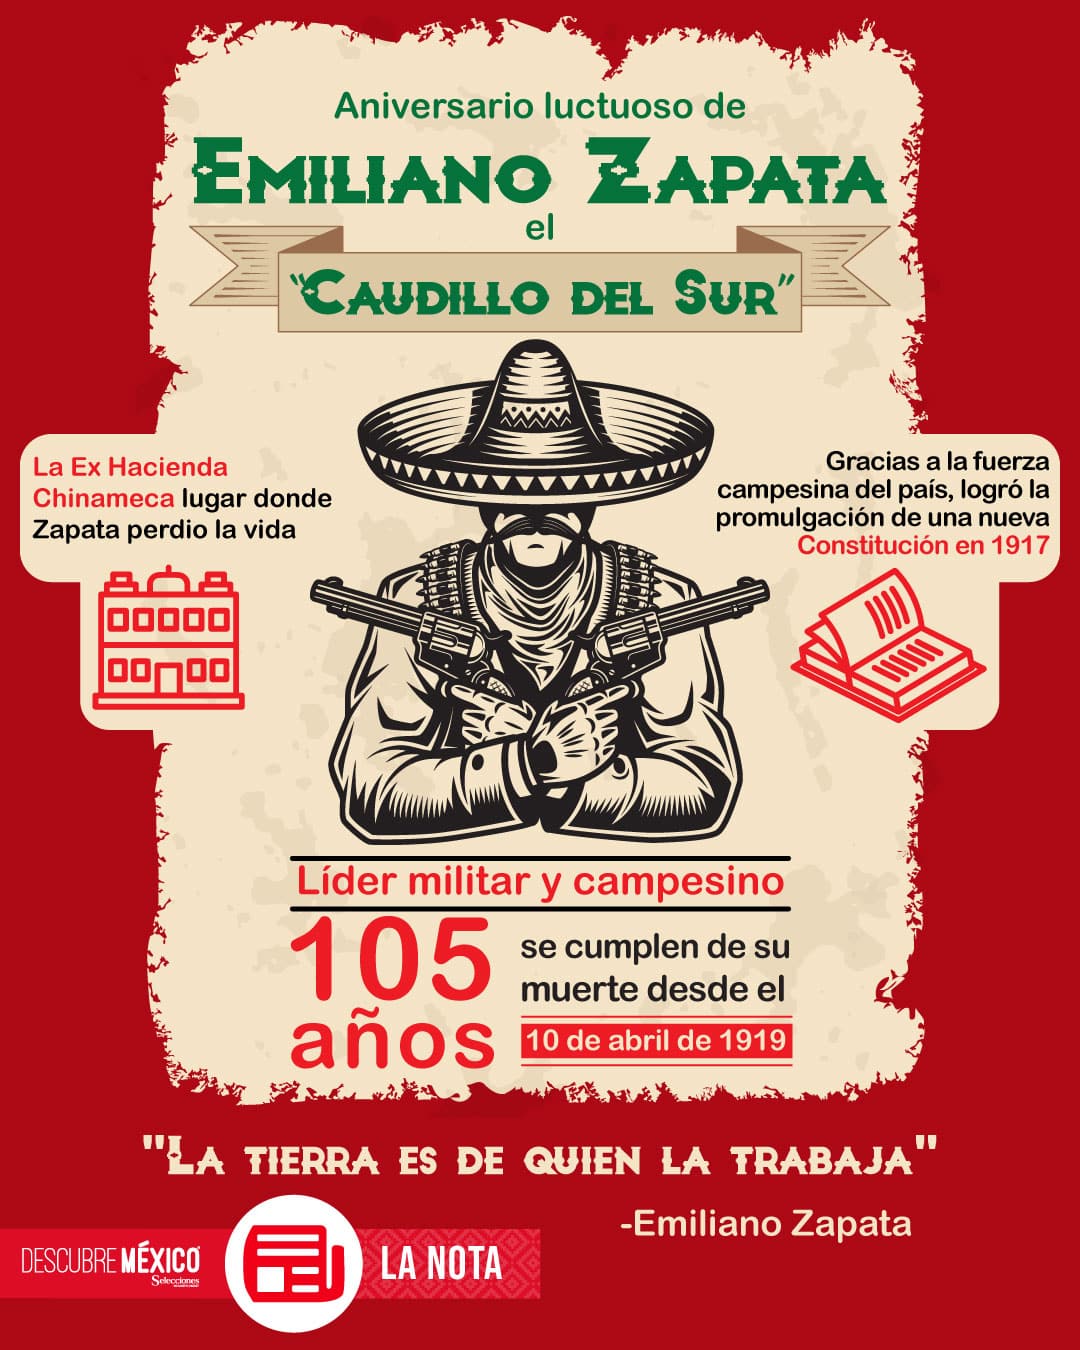 Aniversario luctuoso de Emiliano Zapata